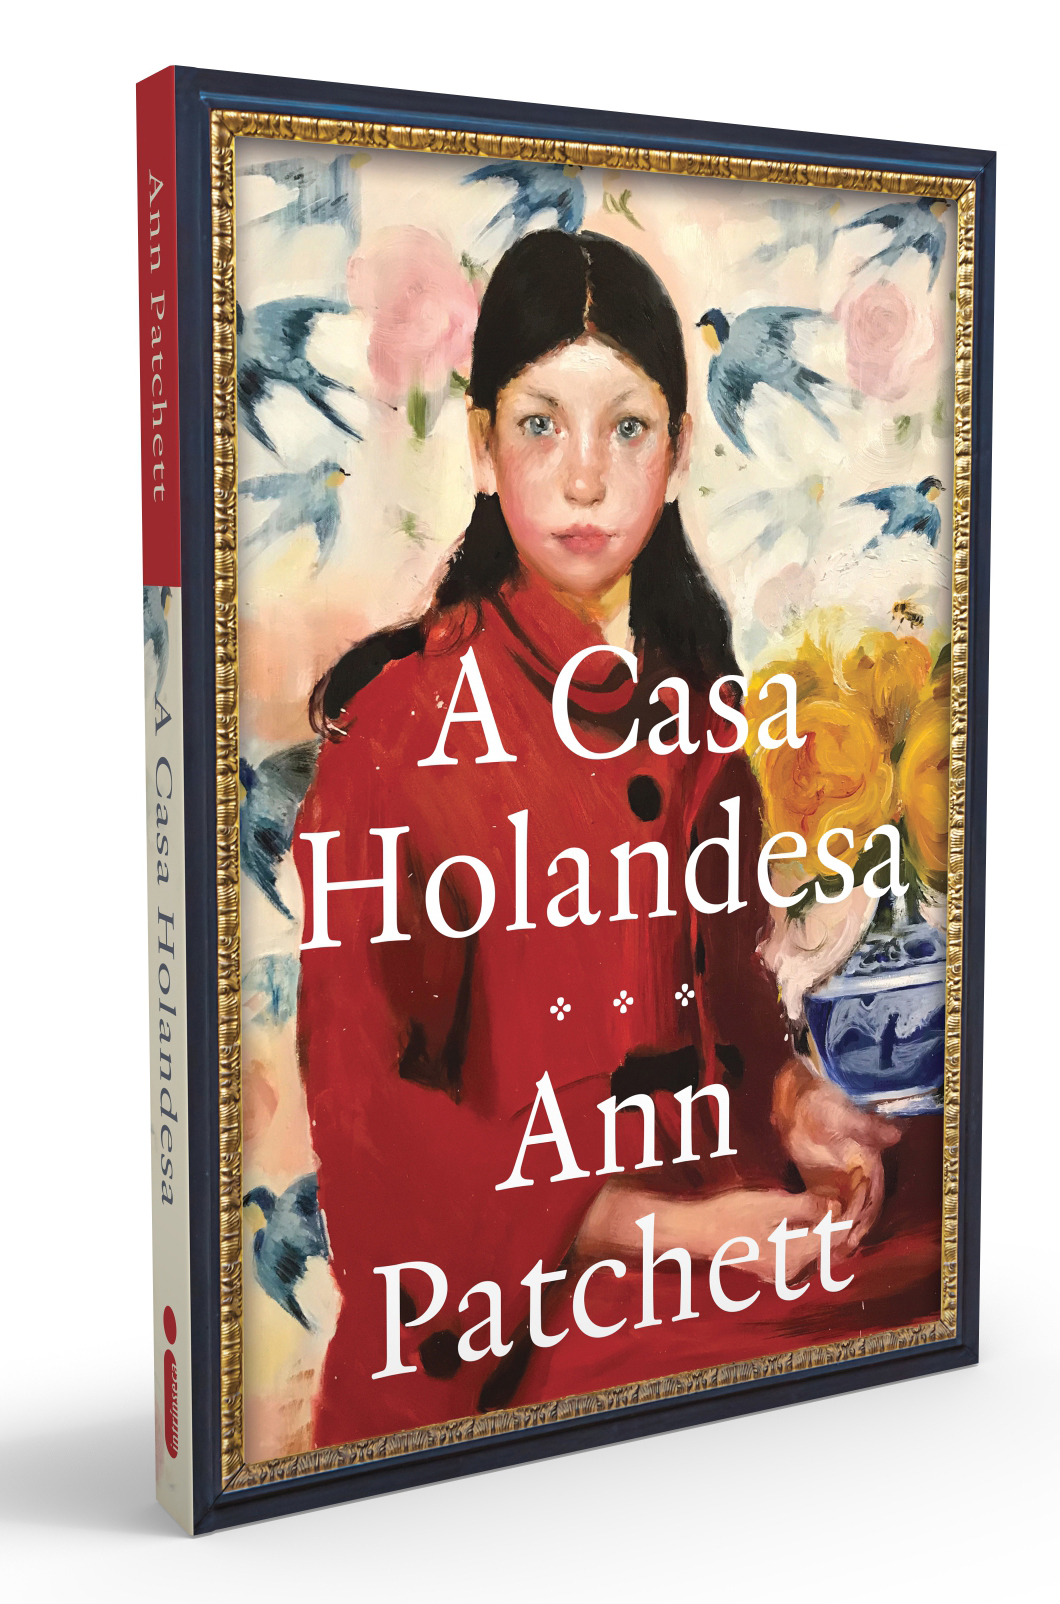 A Casa Holandesa | Livro finalista do Pulitzer 2020 chega às livrarias em agosto